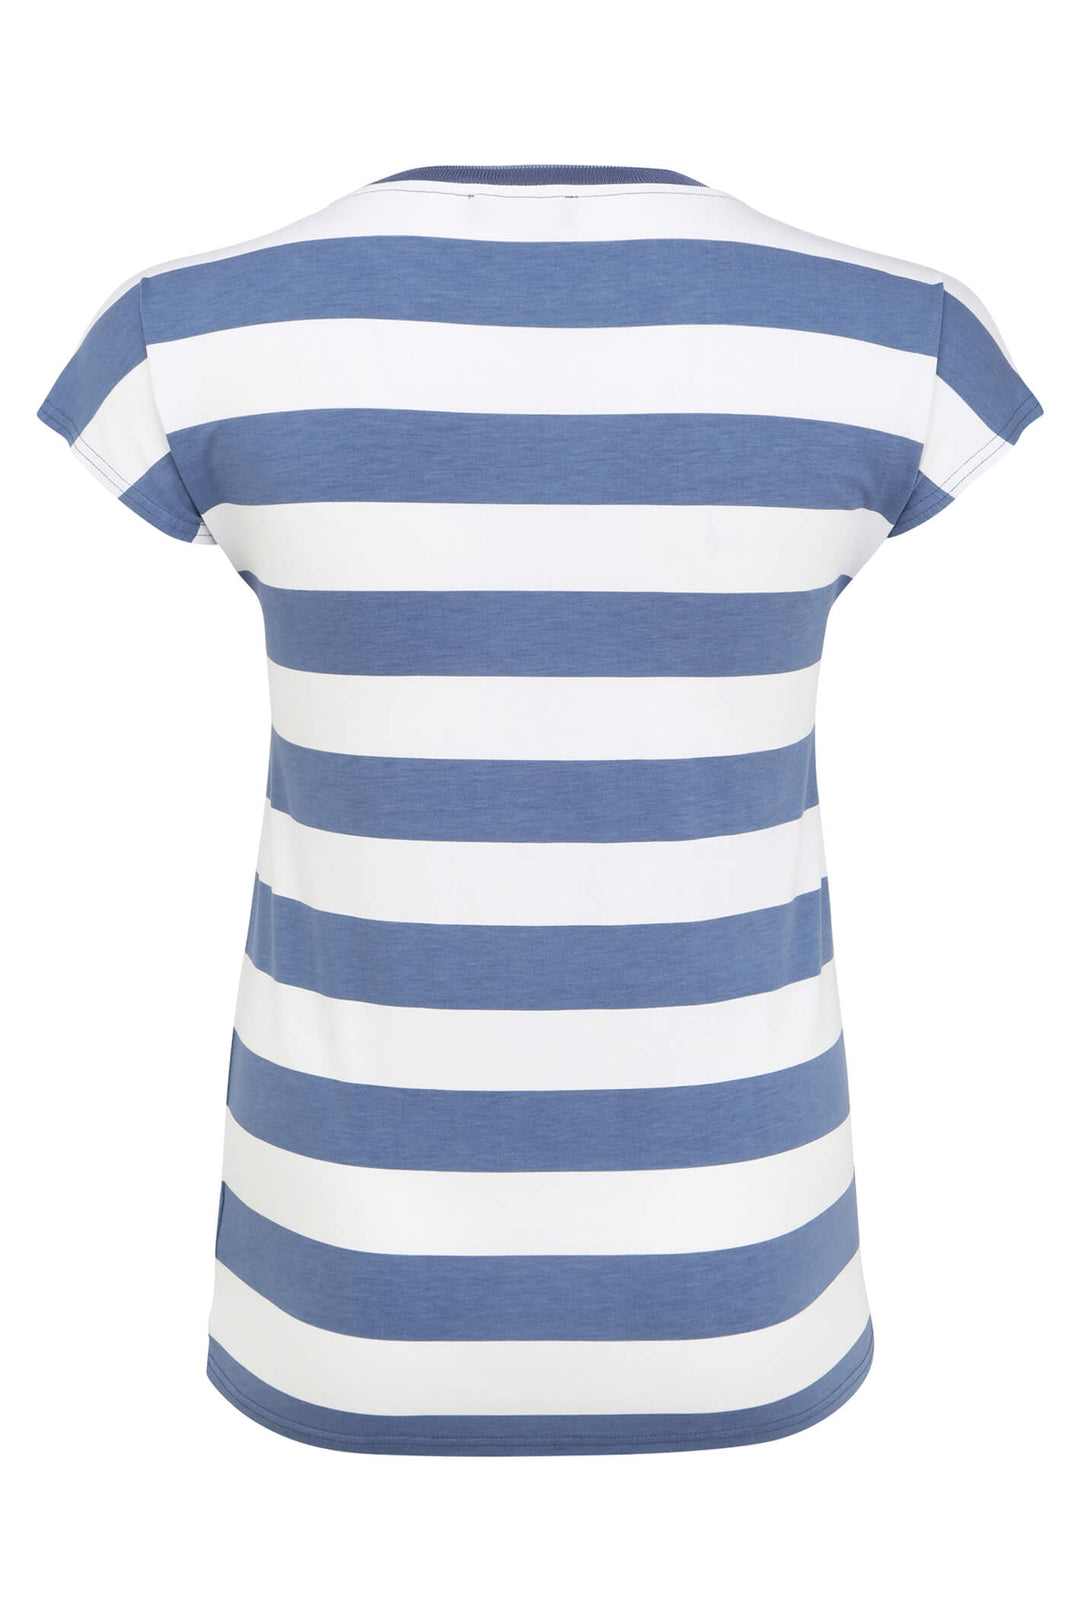 Doris Streich 522 159 56 Blue White Stripe Top - Shirley Allum Boutique